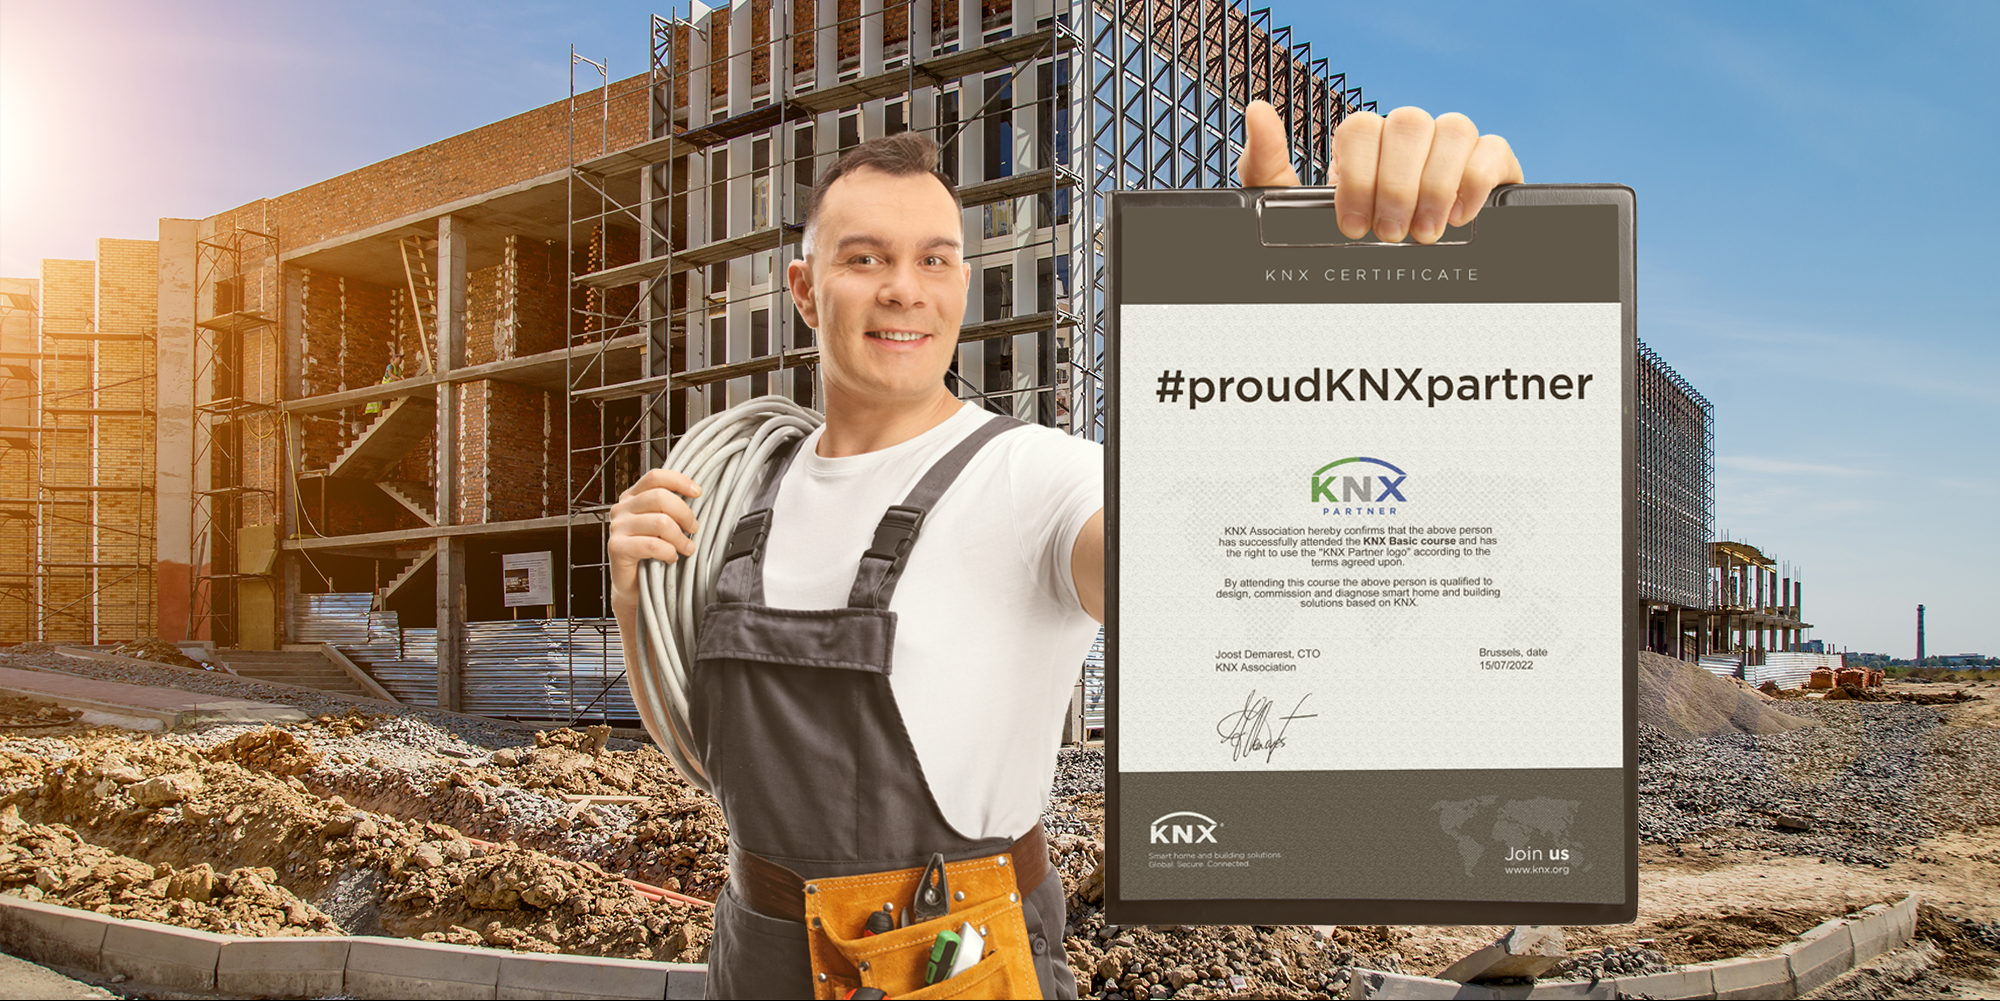 Dimostra di essere un KNX Partner orgoglioso e vinci le licenze ETS6 Professional